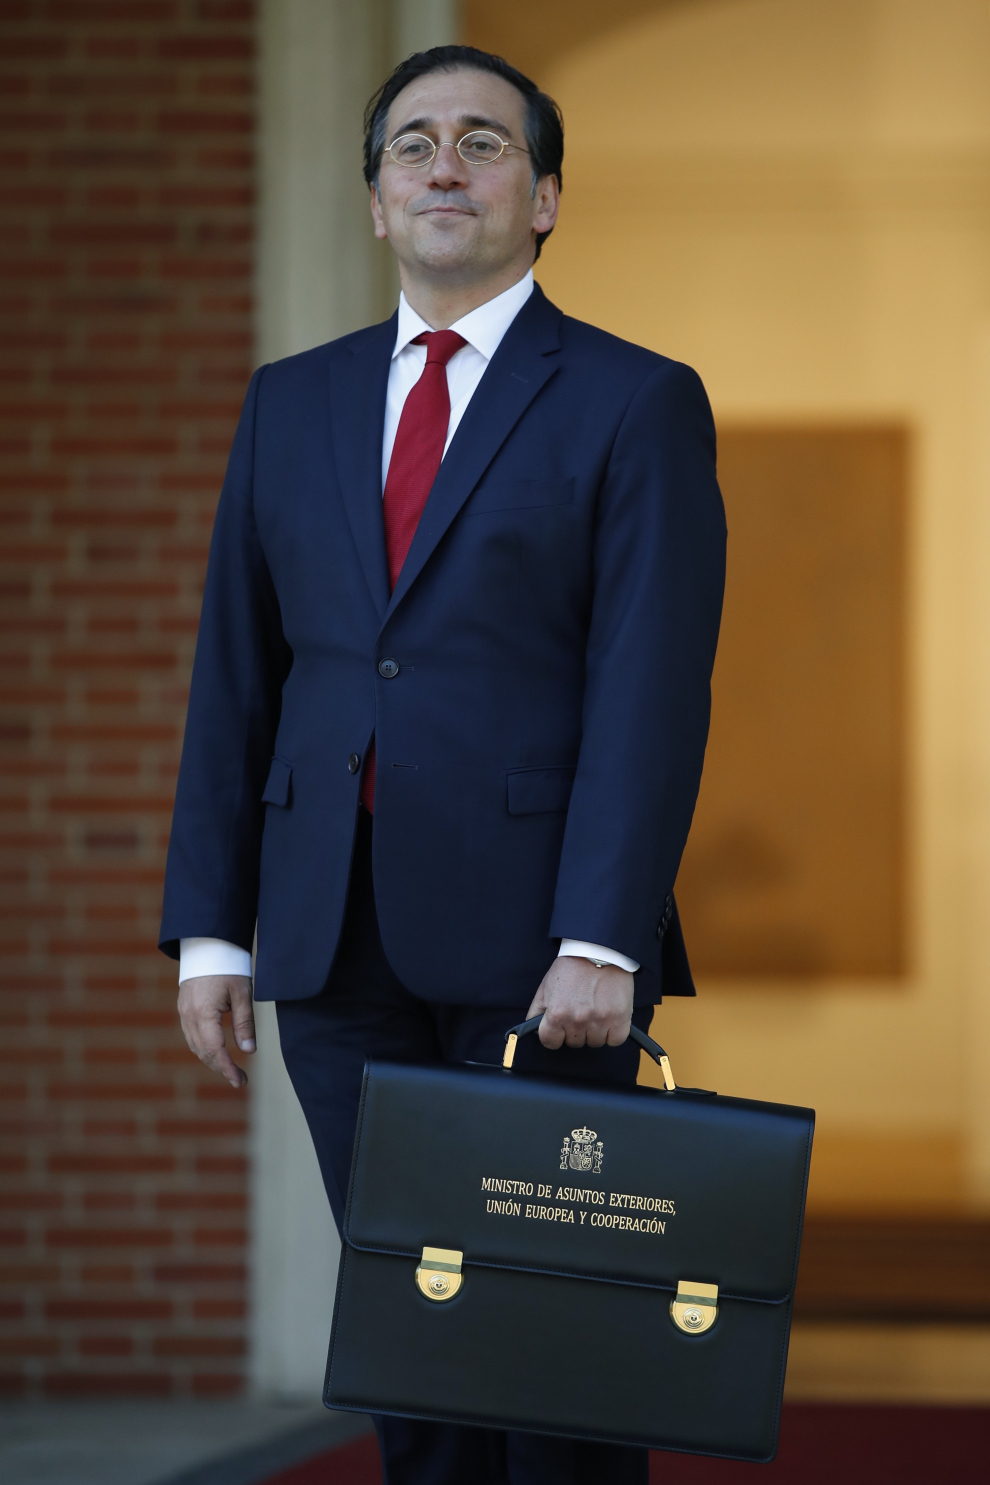 El nuevo ministro de Asuntos Exteriores, Unión Europea y Cooperación, José Manuel Albares